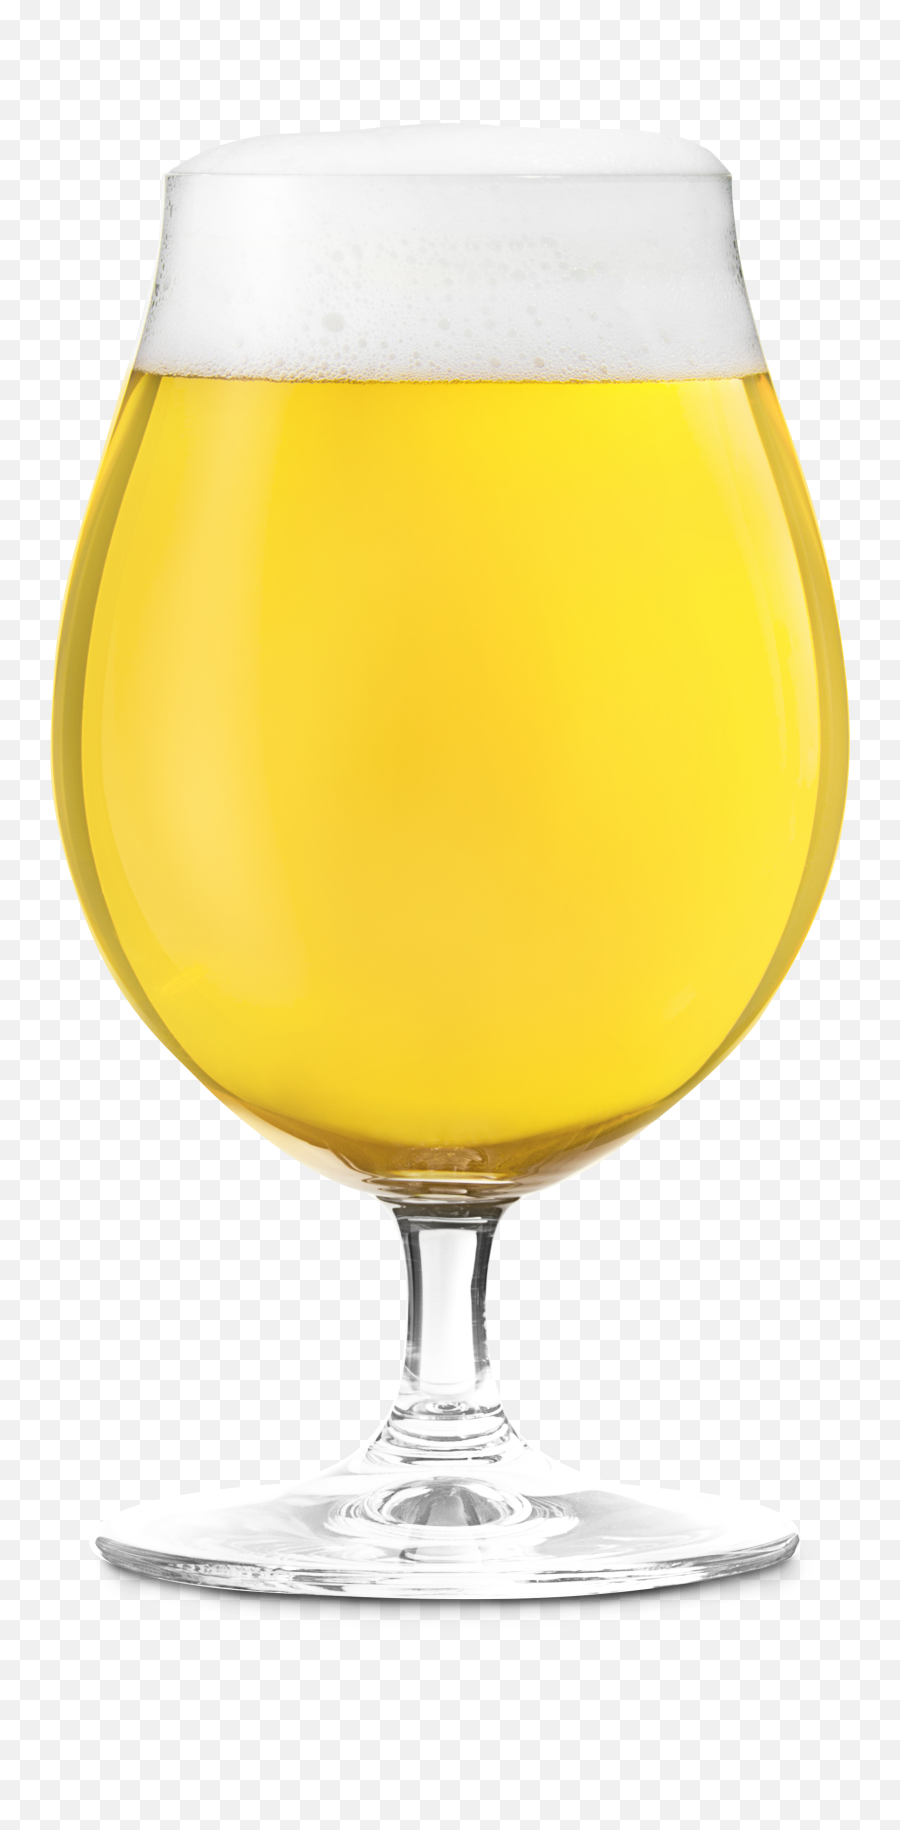 Honeysuckle Png - Beer Glassware,Honeysuckle Png